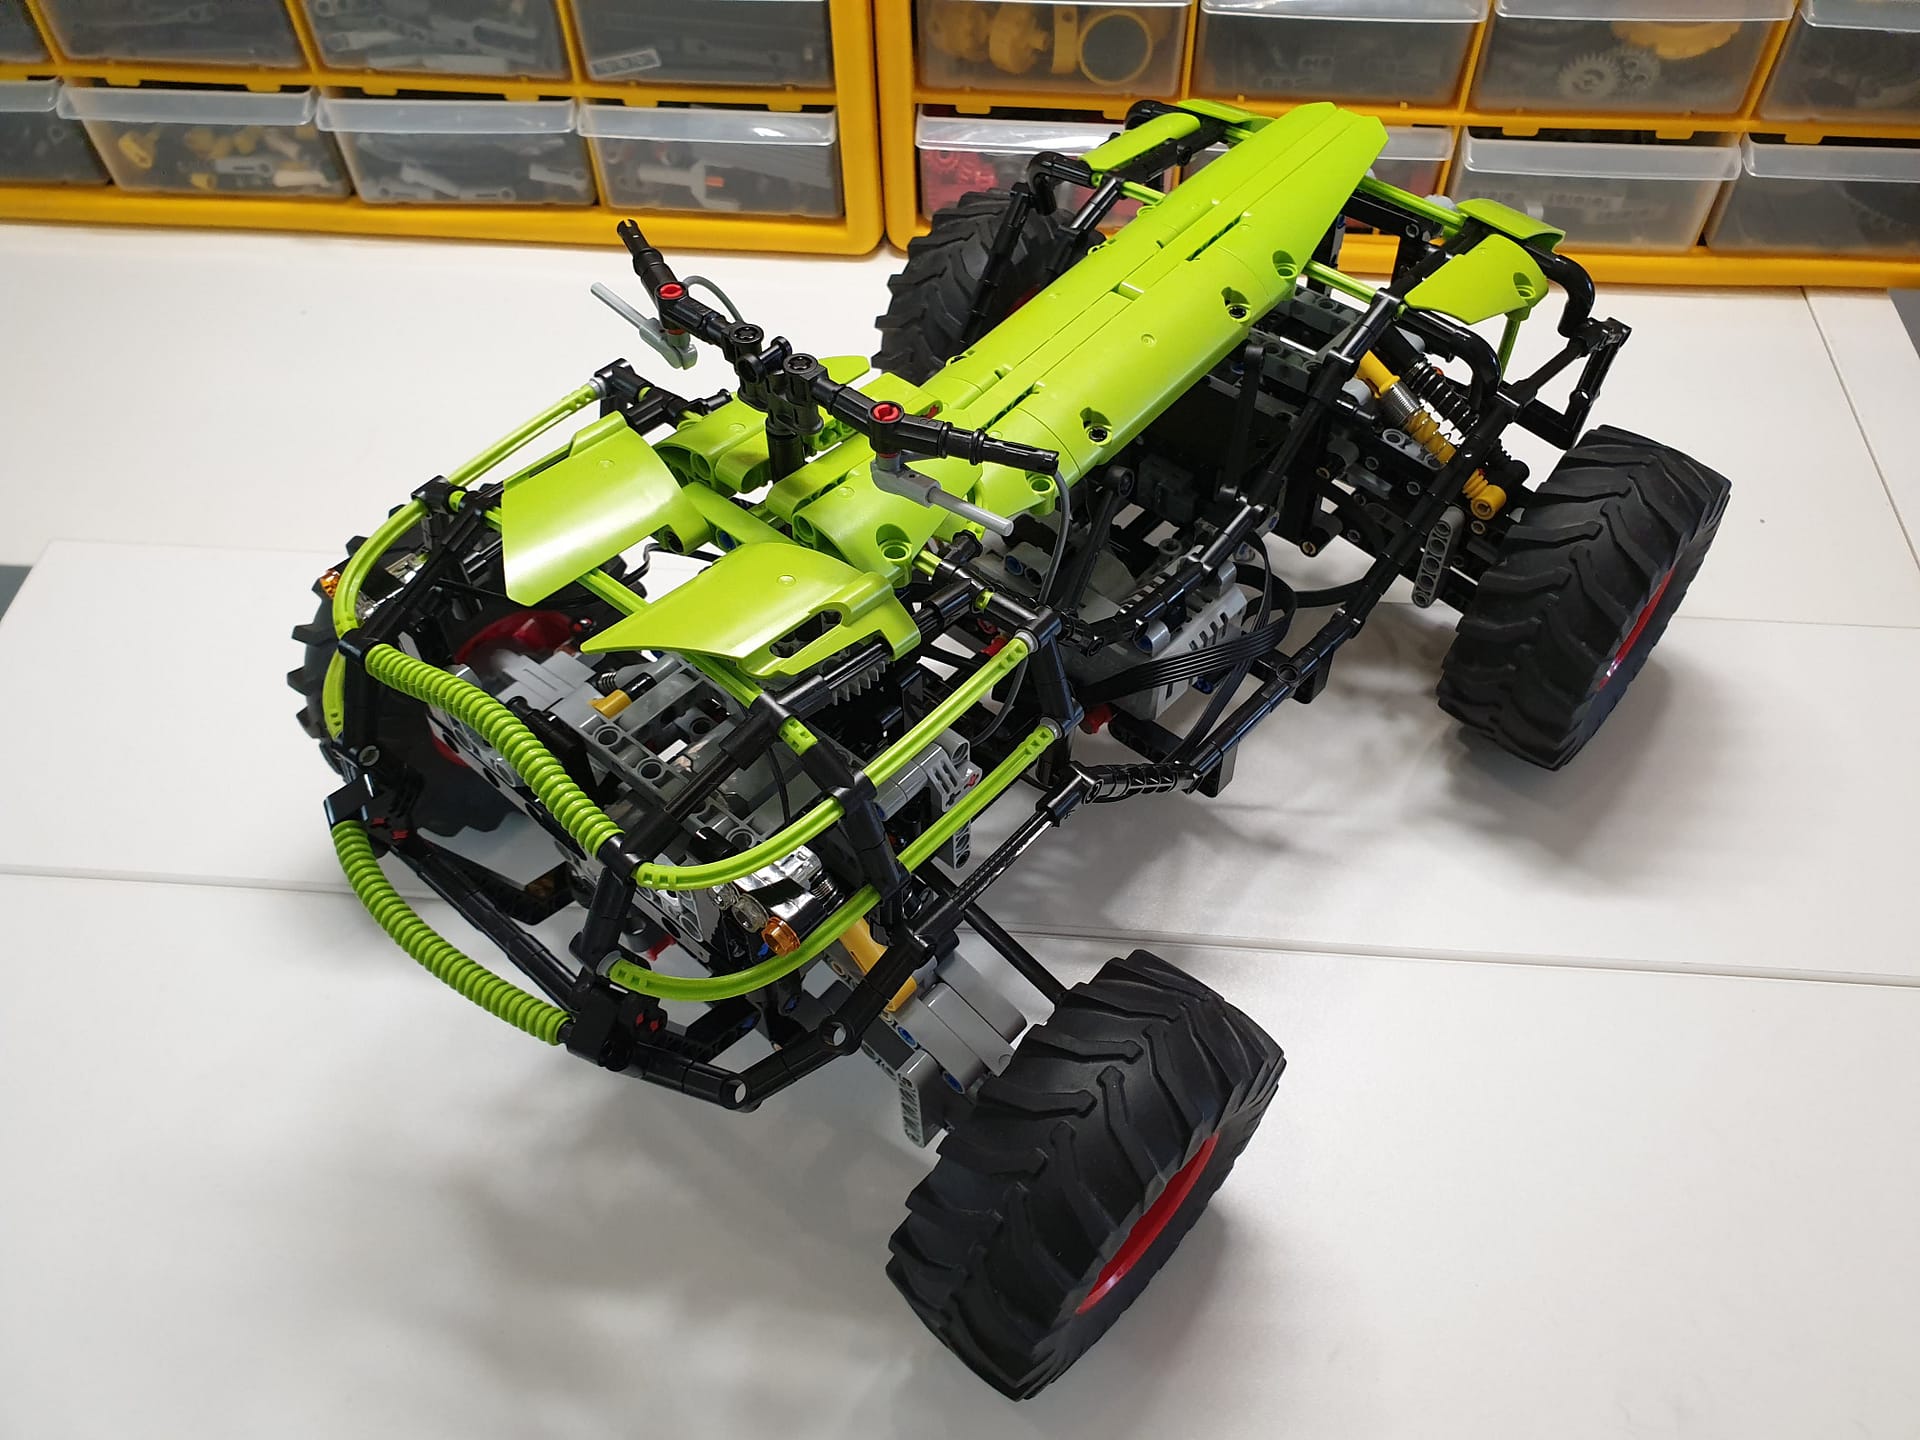 Lime ATV by braker23